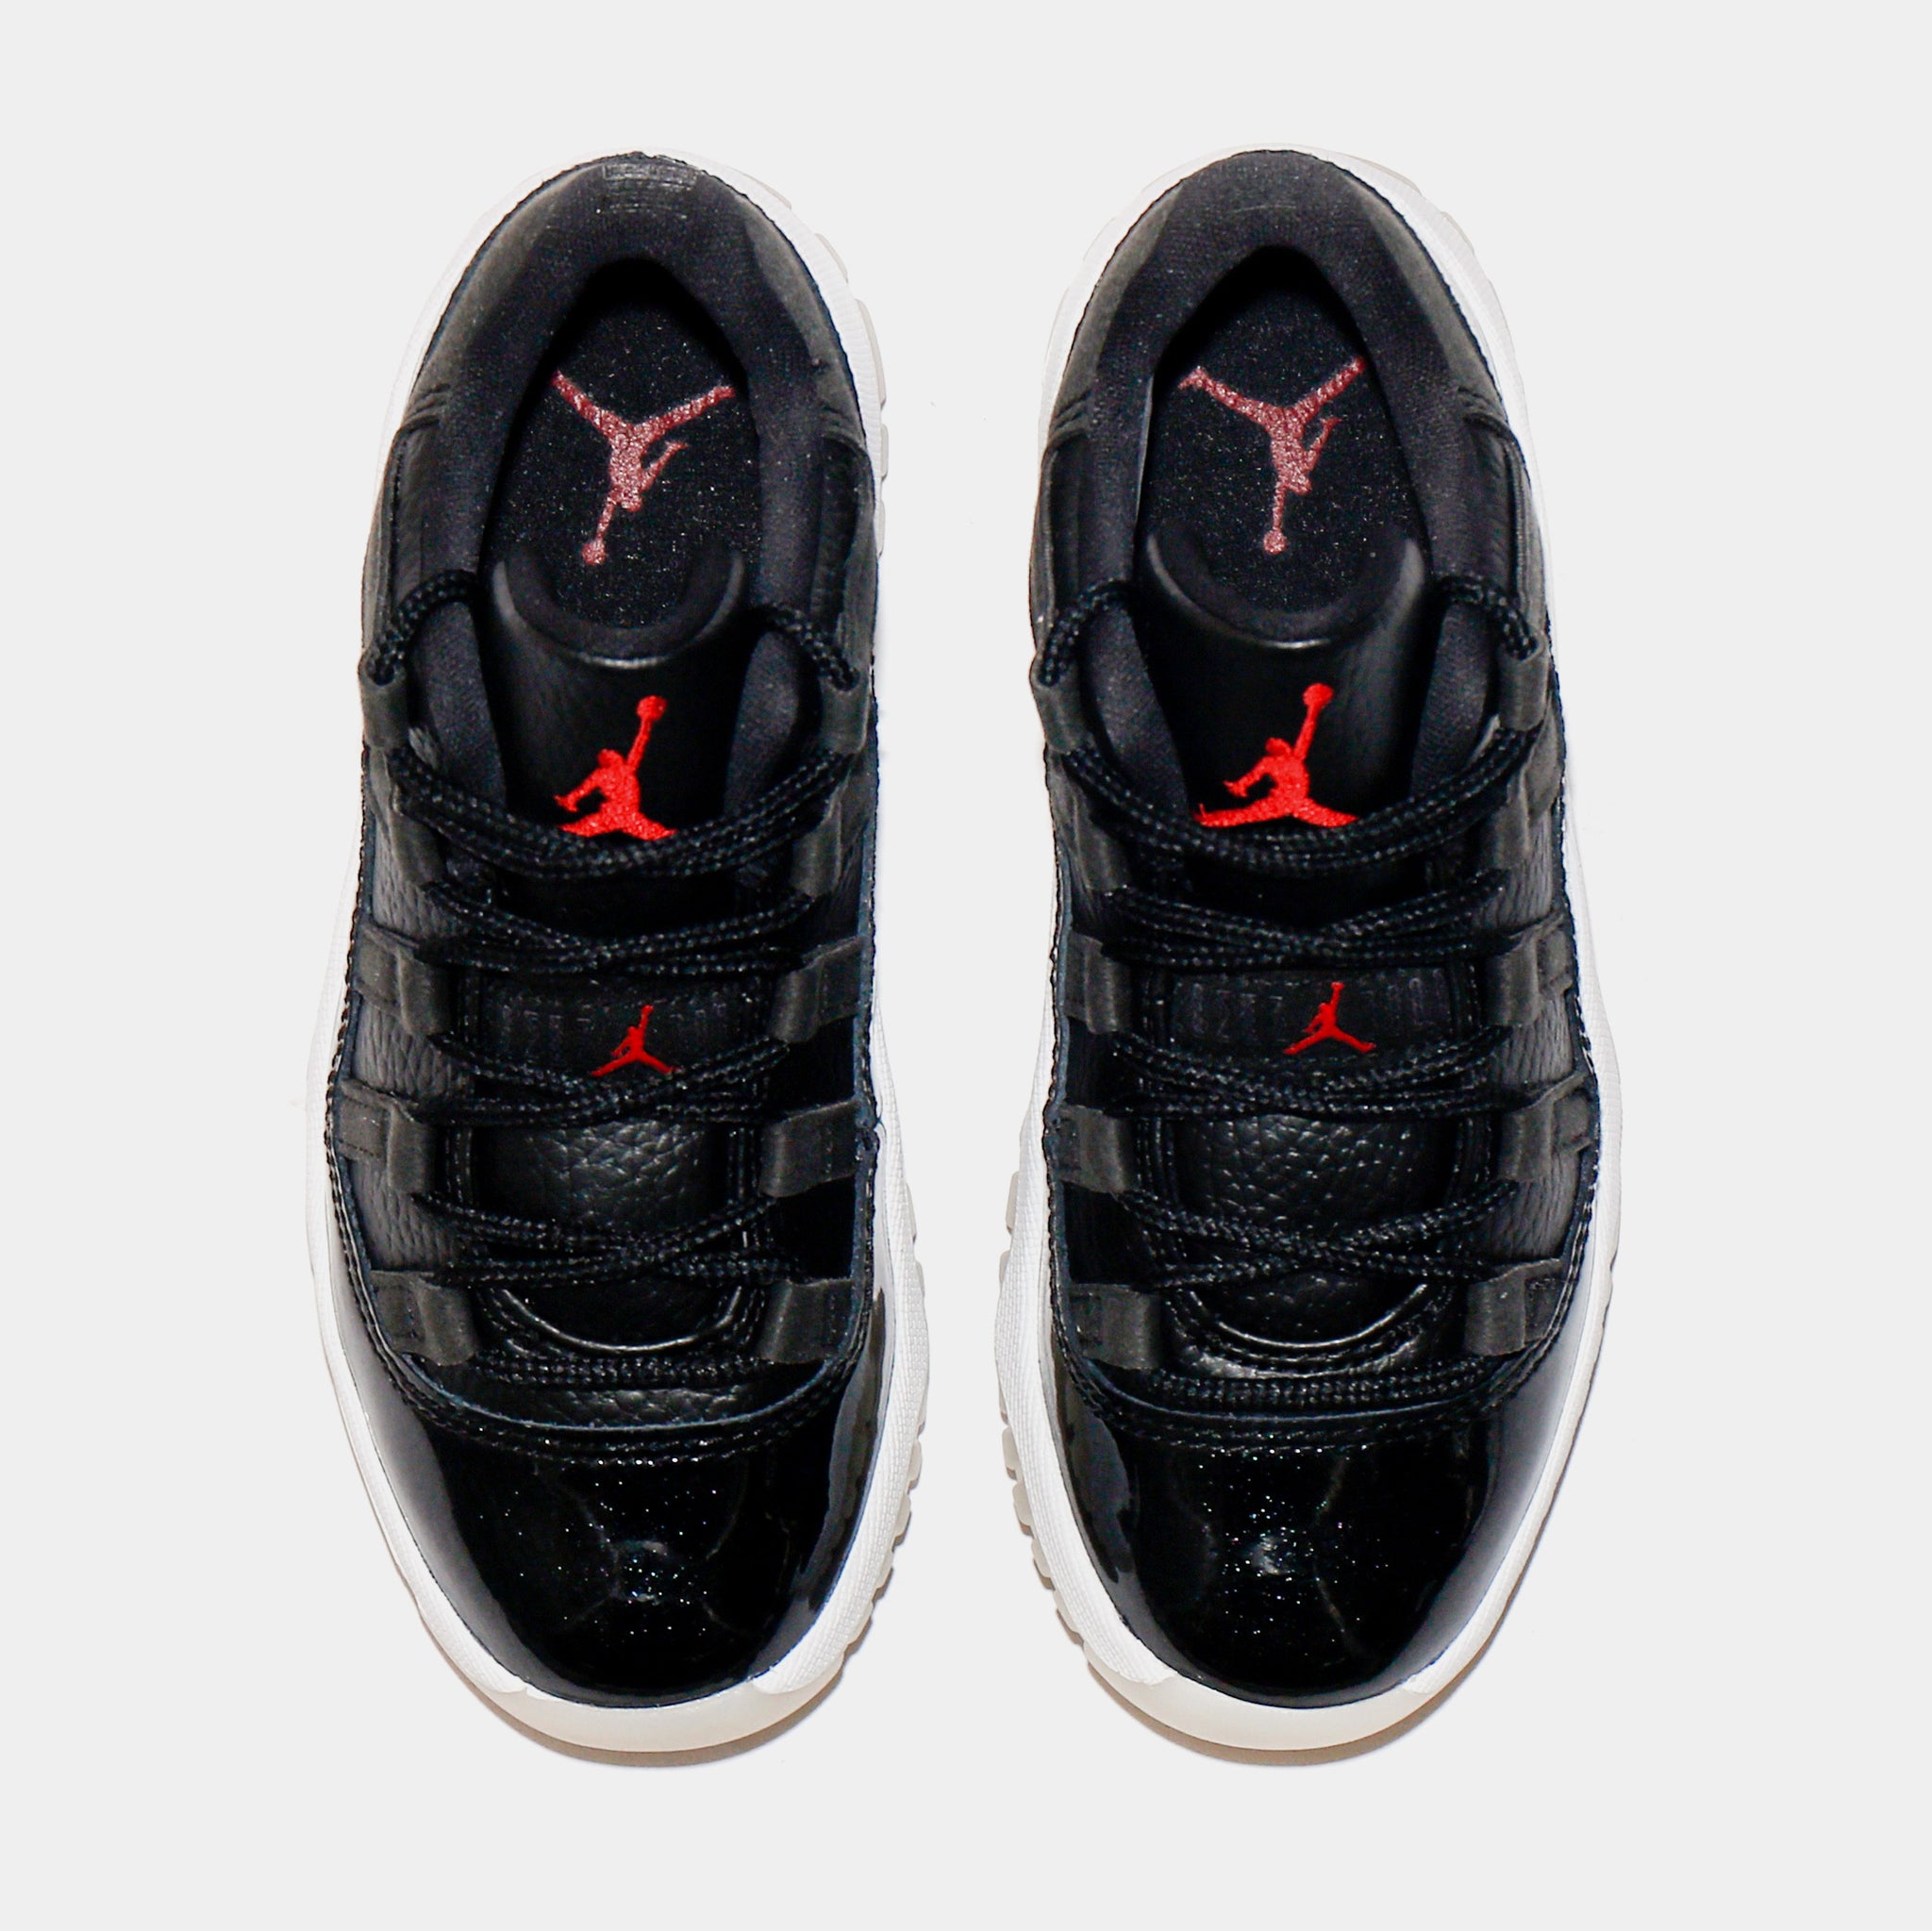 Jordan Air Jordan 11 Low 72-10 Preschool Lifestyle Shoes Black 